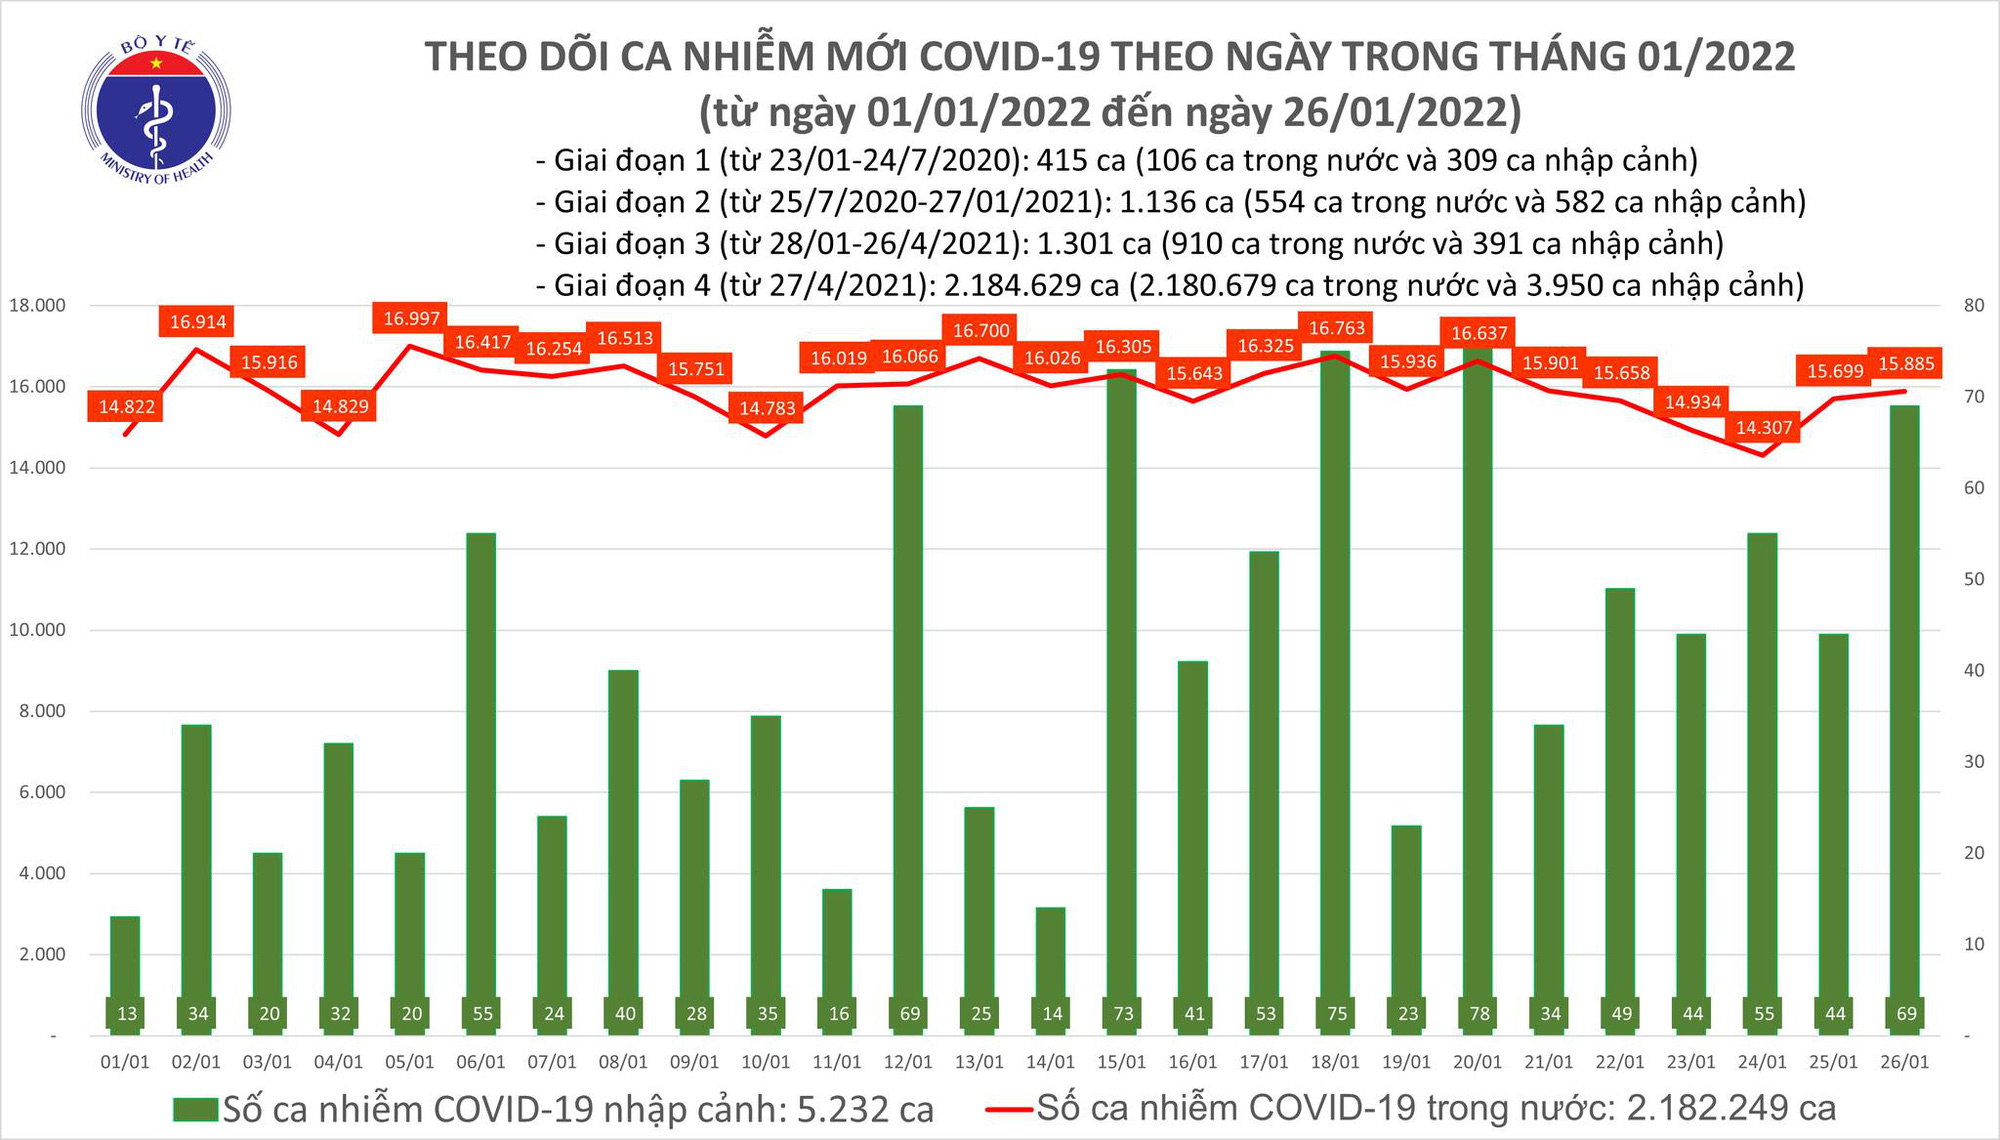 Covid-19 ngày 26/1: Việt Nam đã có 166 ca nhiễm biến chủng Omicron - Ảnh 1.